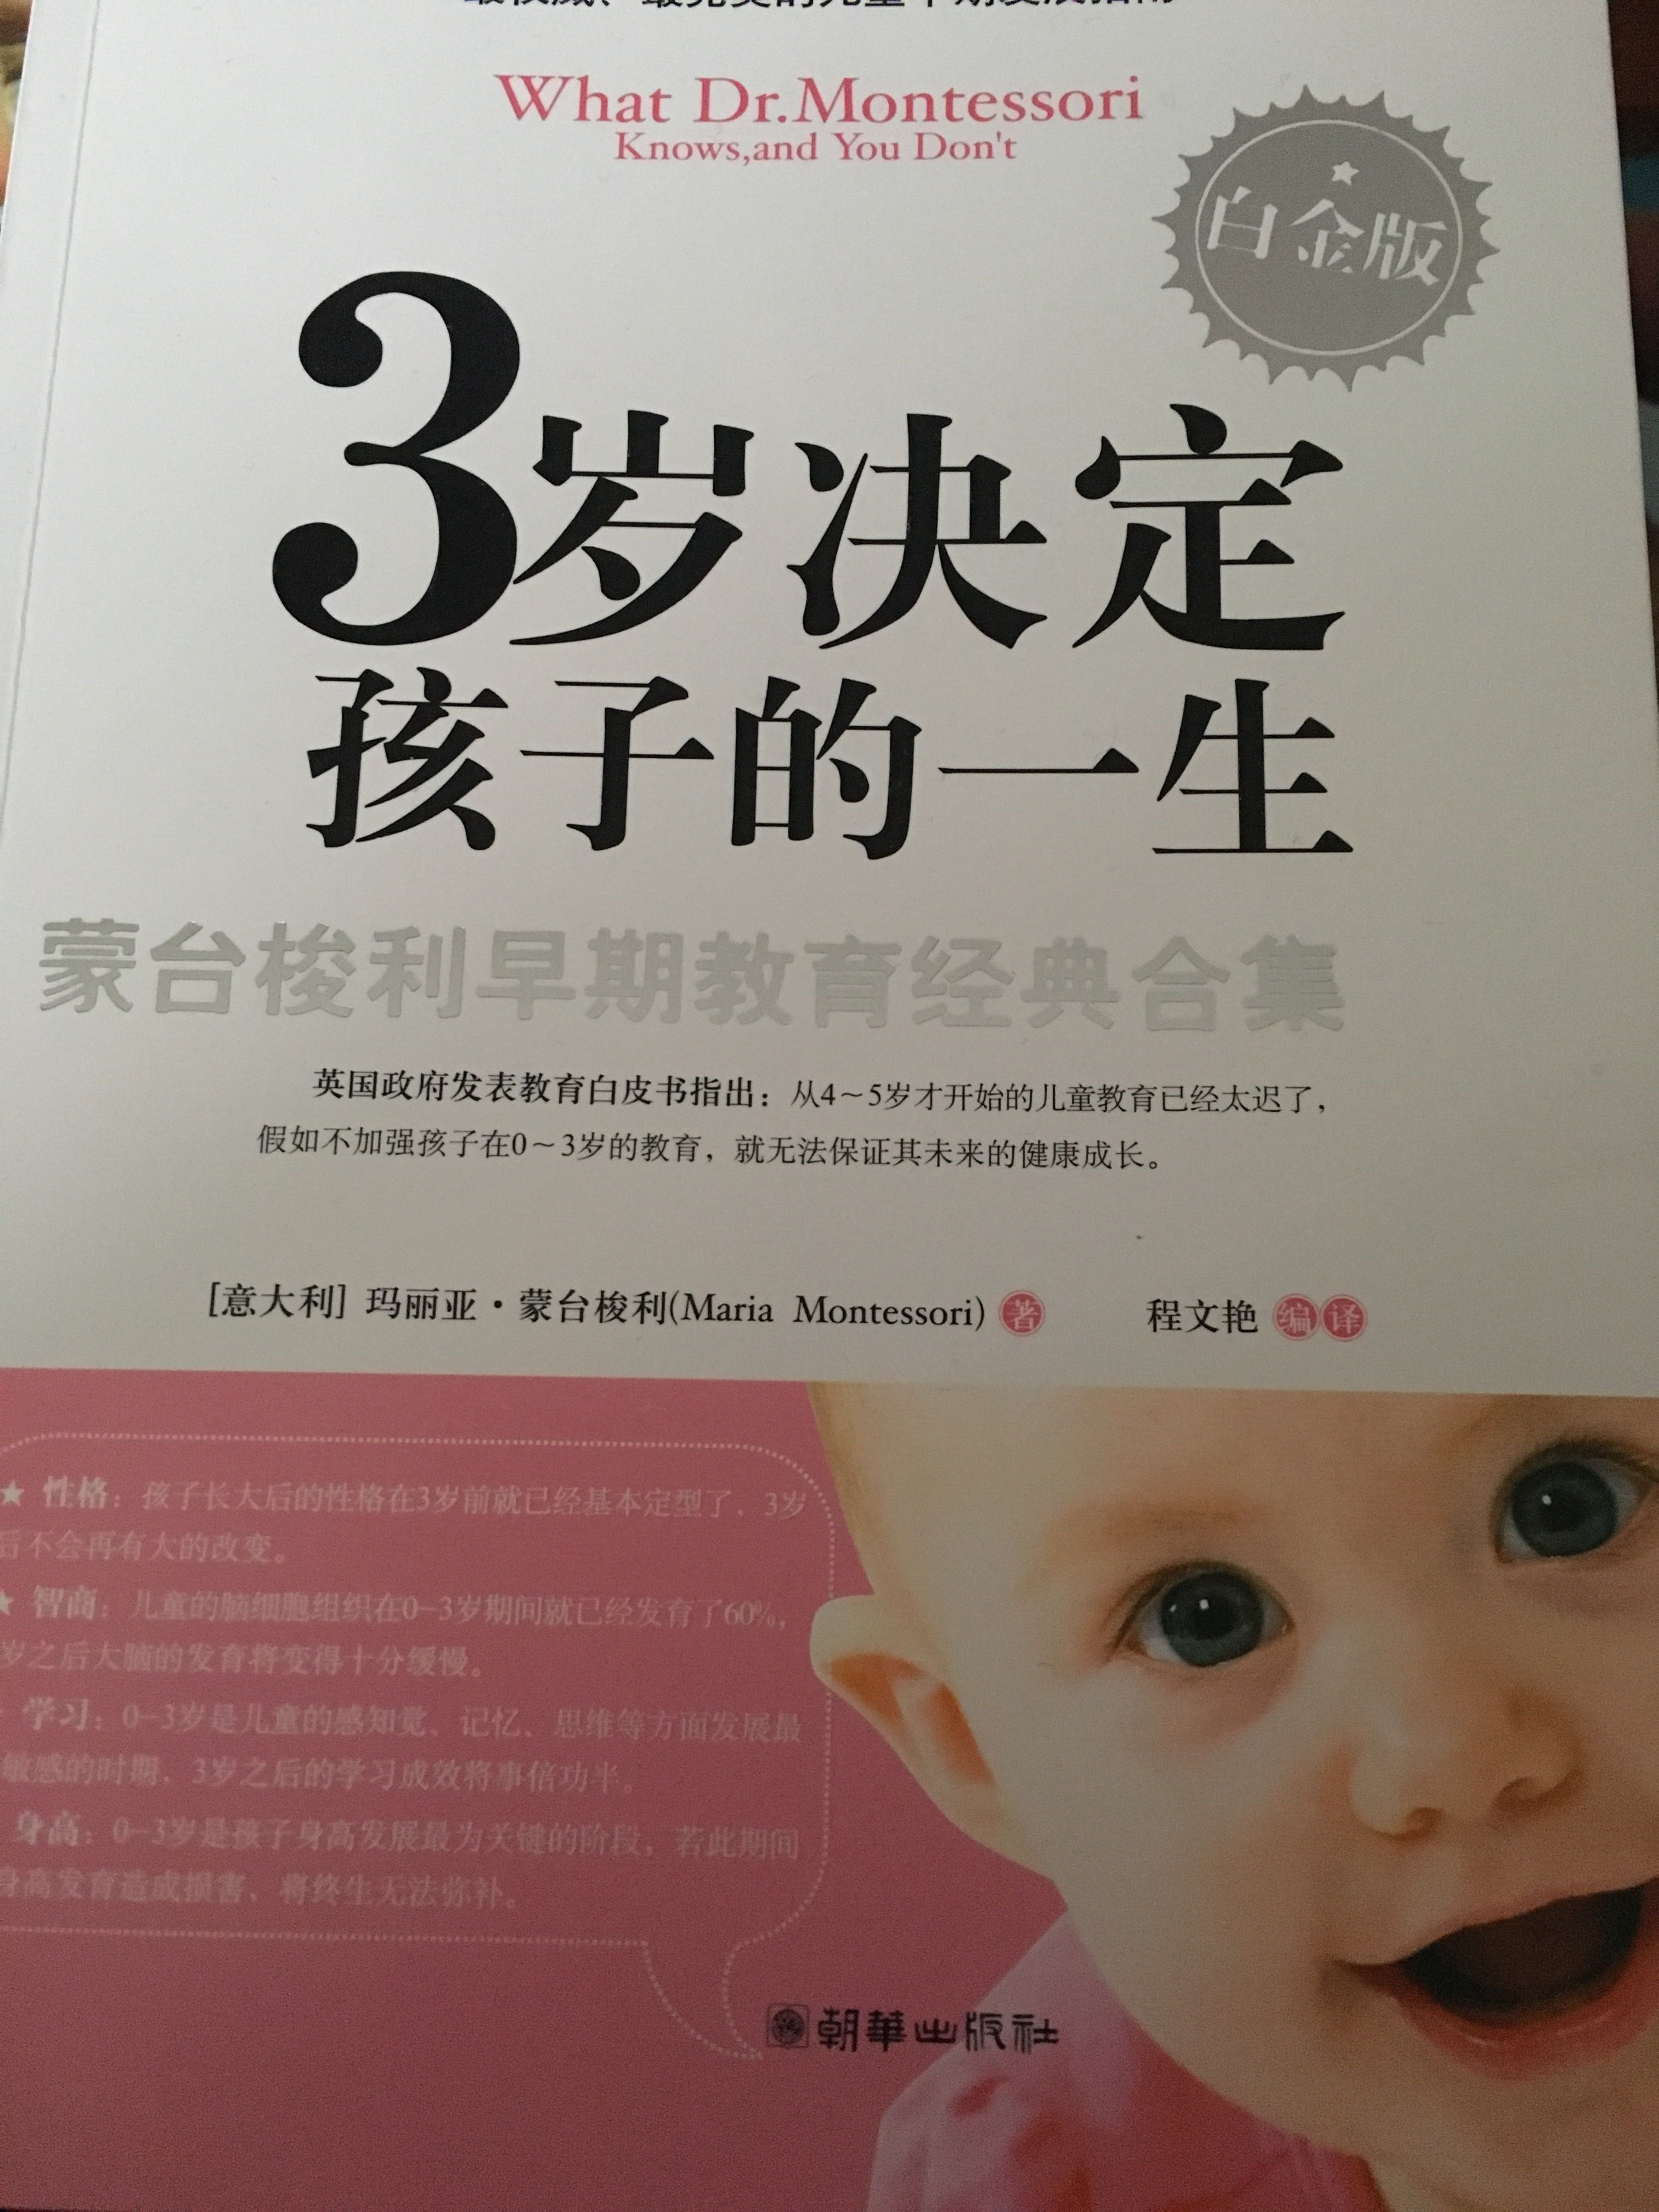 正在认真地读这本书，读了几篇有很大收益，希望有小宝宝的妈妈都可以买本看看，这样能正确引导孩子的成长。